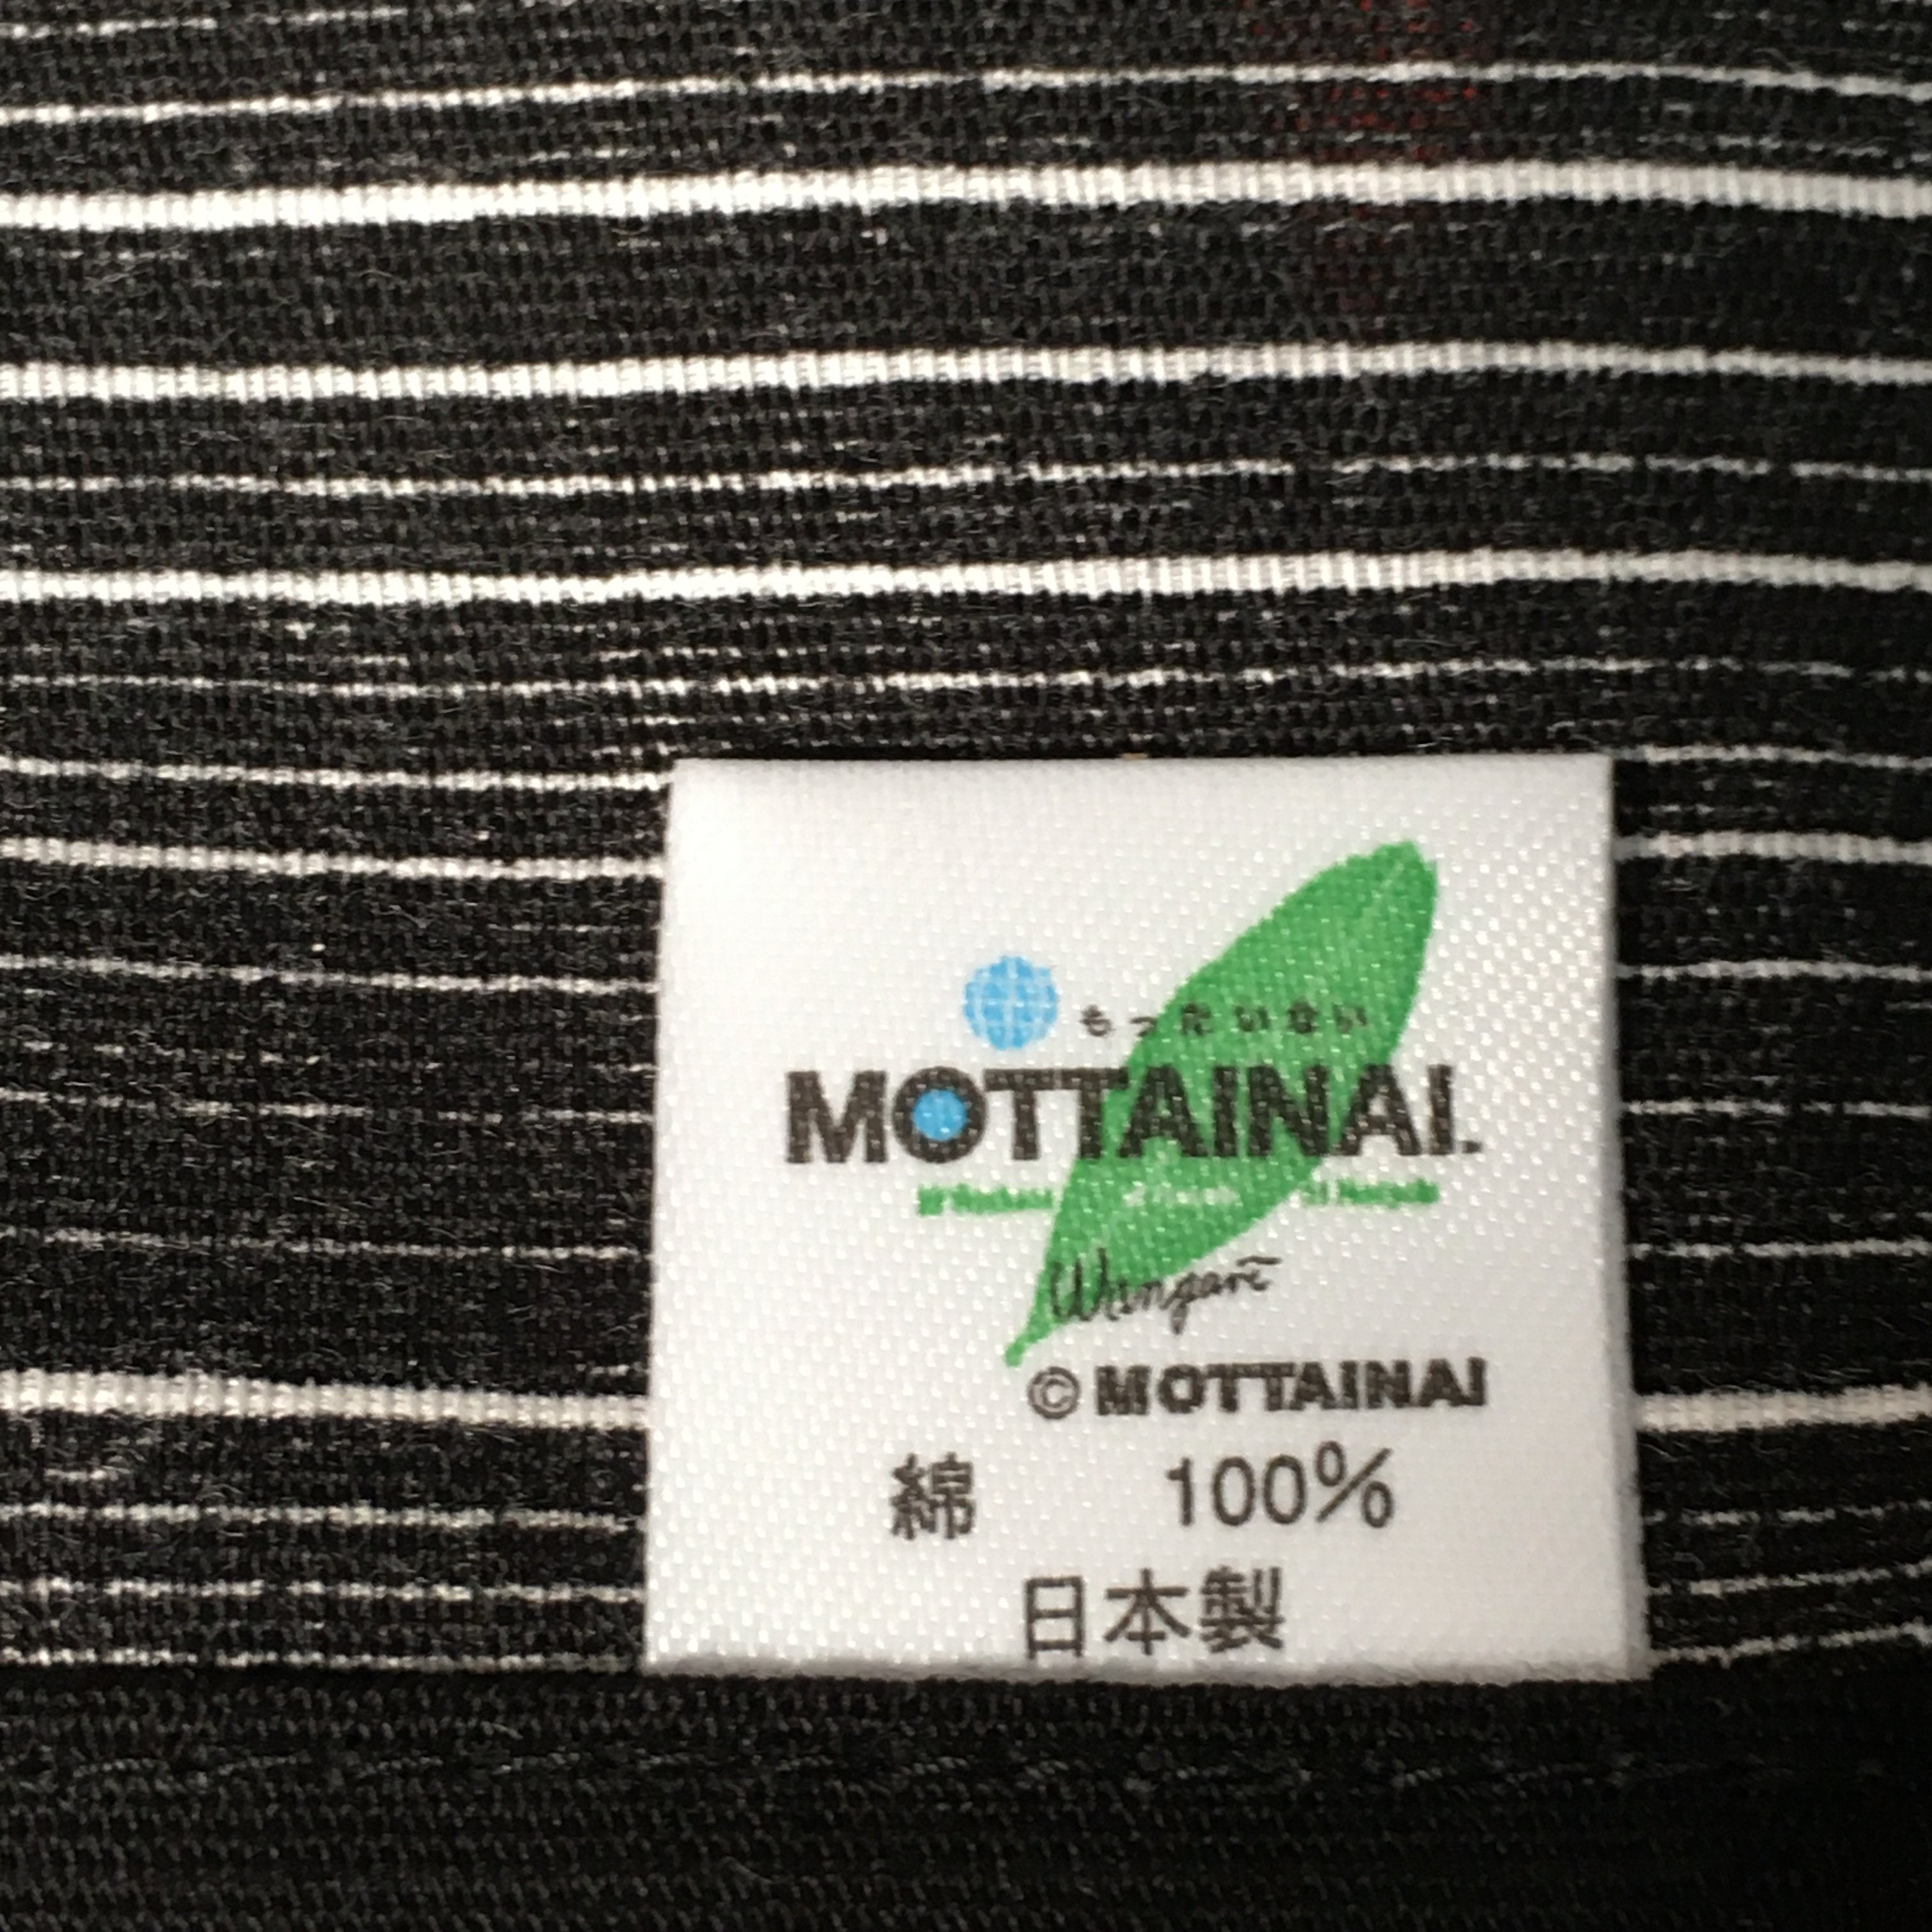 Japanese Wrap Cloth Furoshiki Fabric Cotton Mottainai No Waste black white FU188